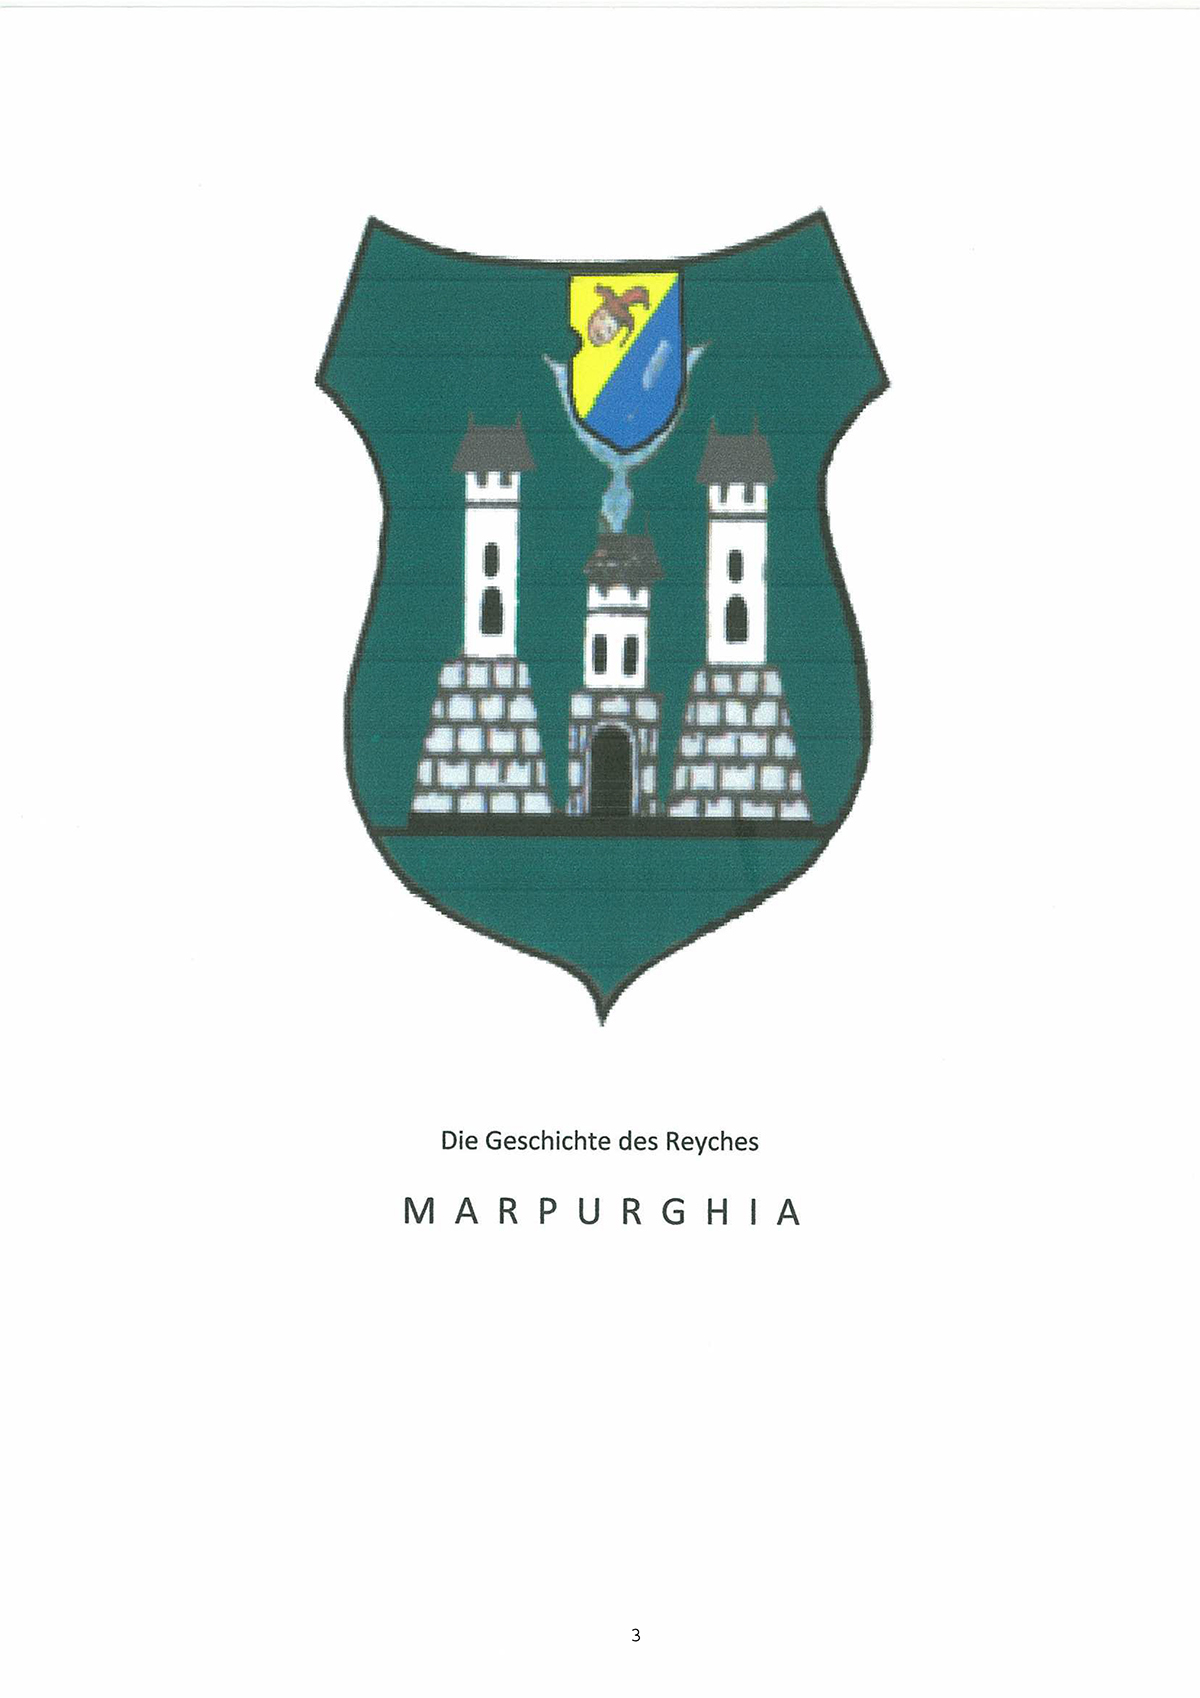 Marpurghia